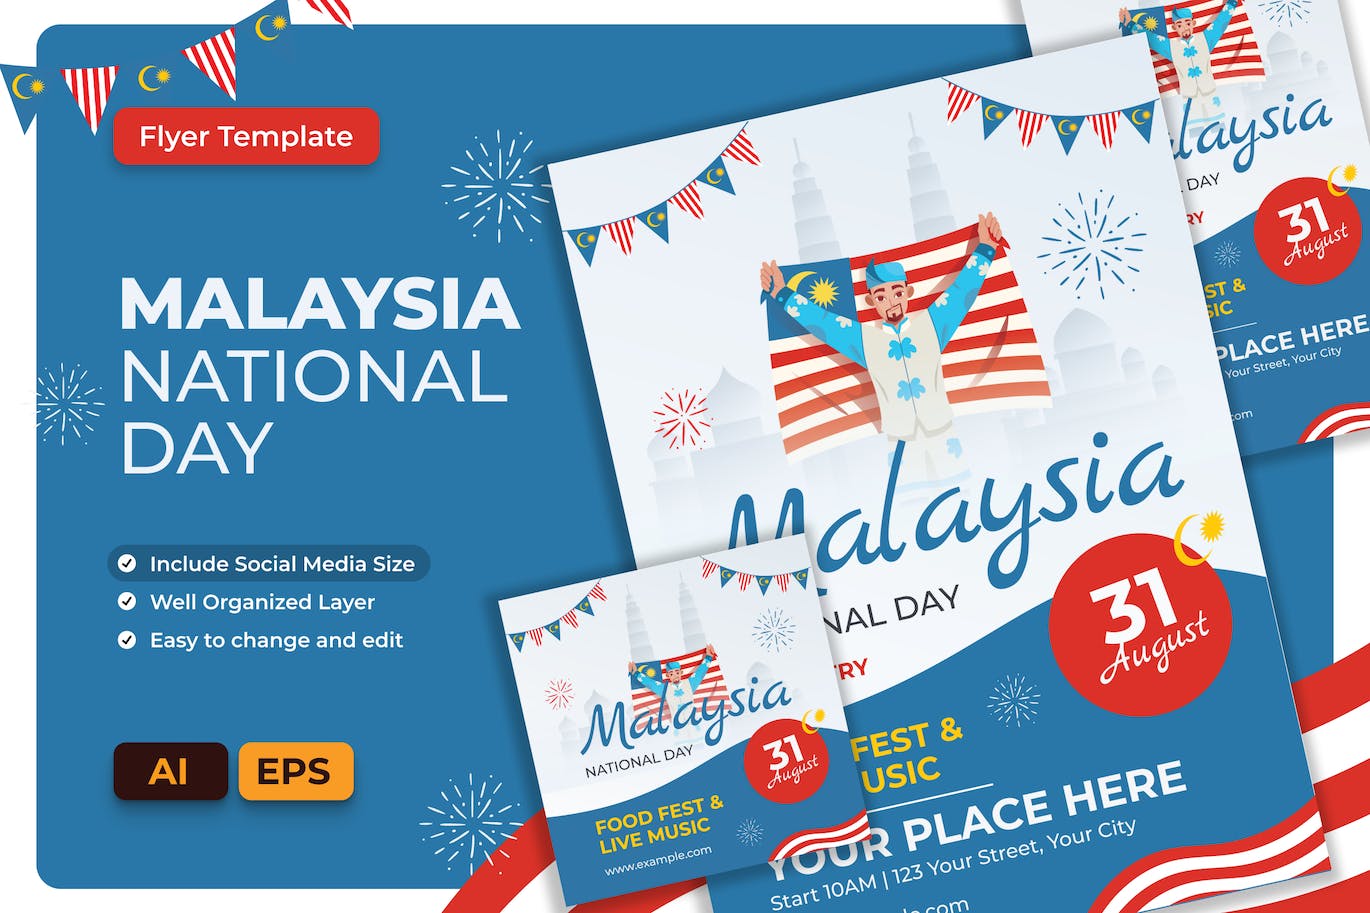 马来西亚国庆传单设计AI和EPS模板 Malaysia National Day Flyer AI & EPS Template